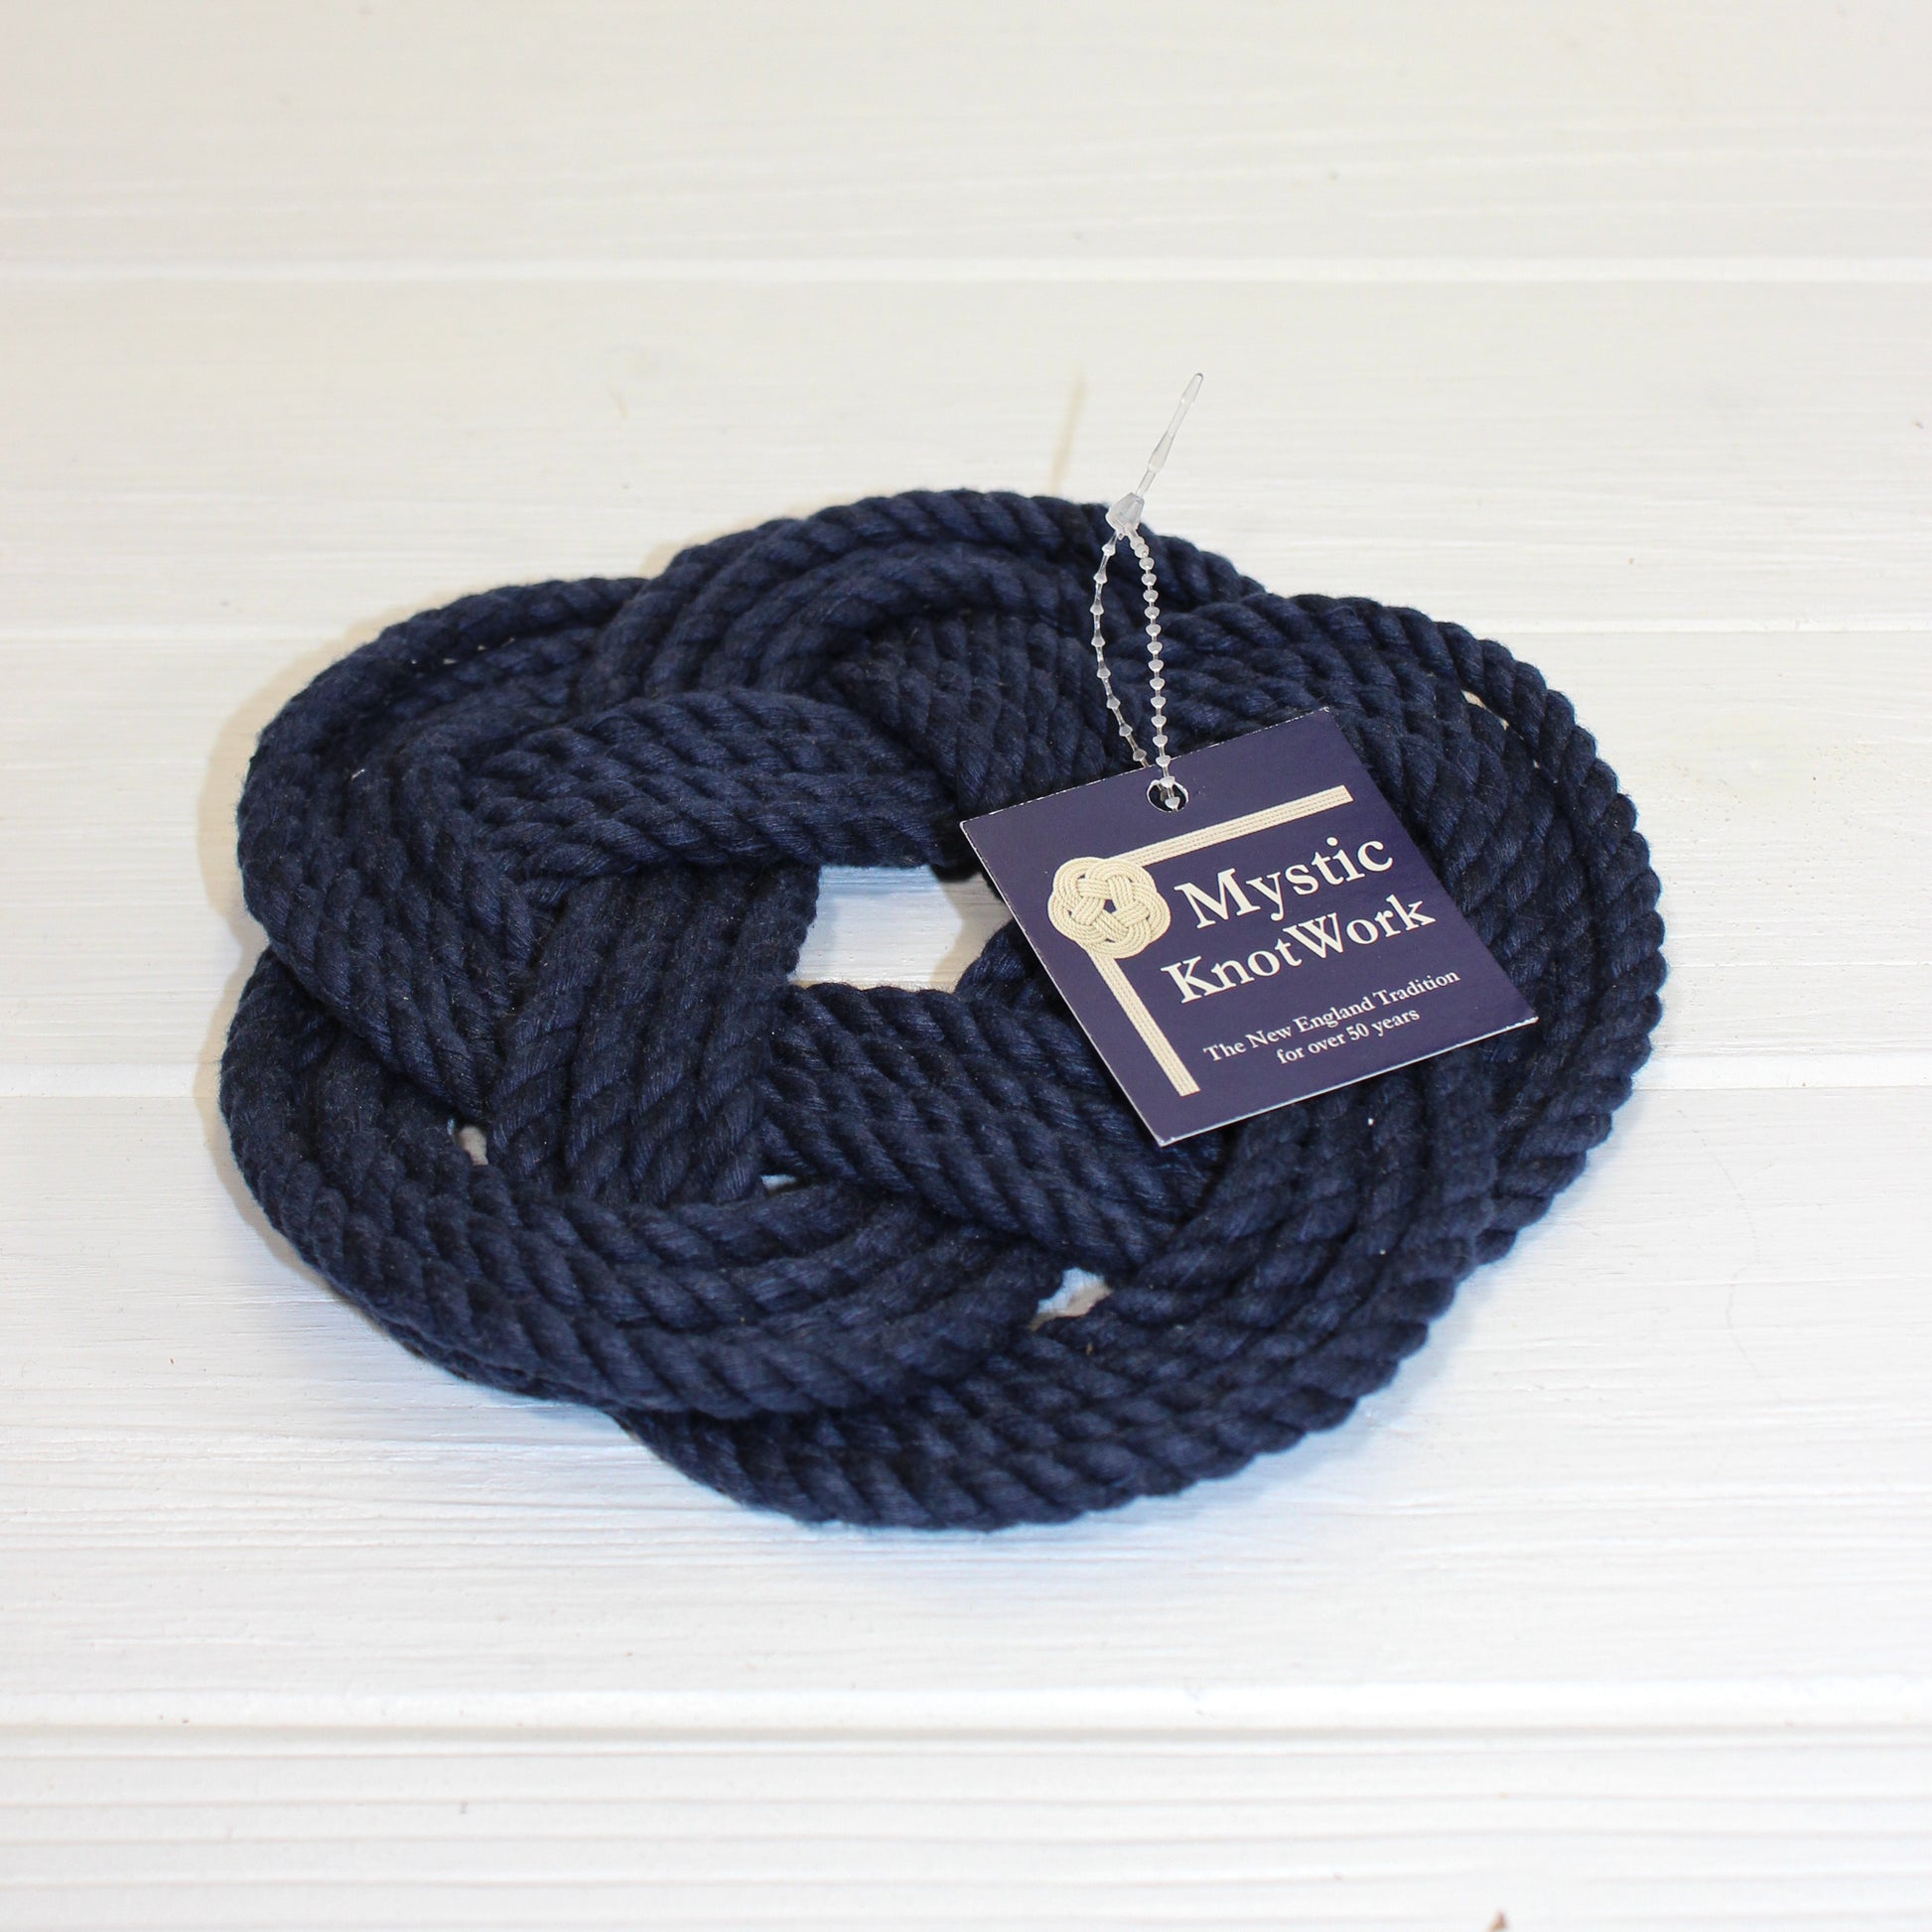 Sailor knot trivets blue